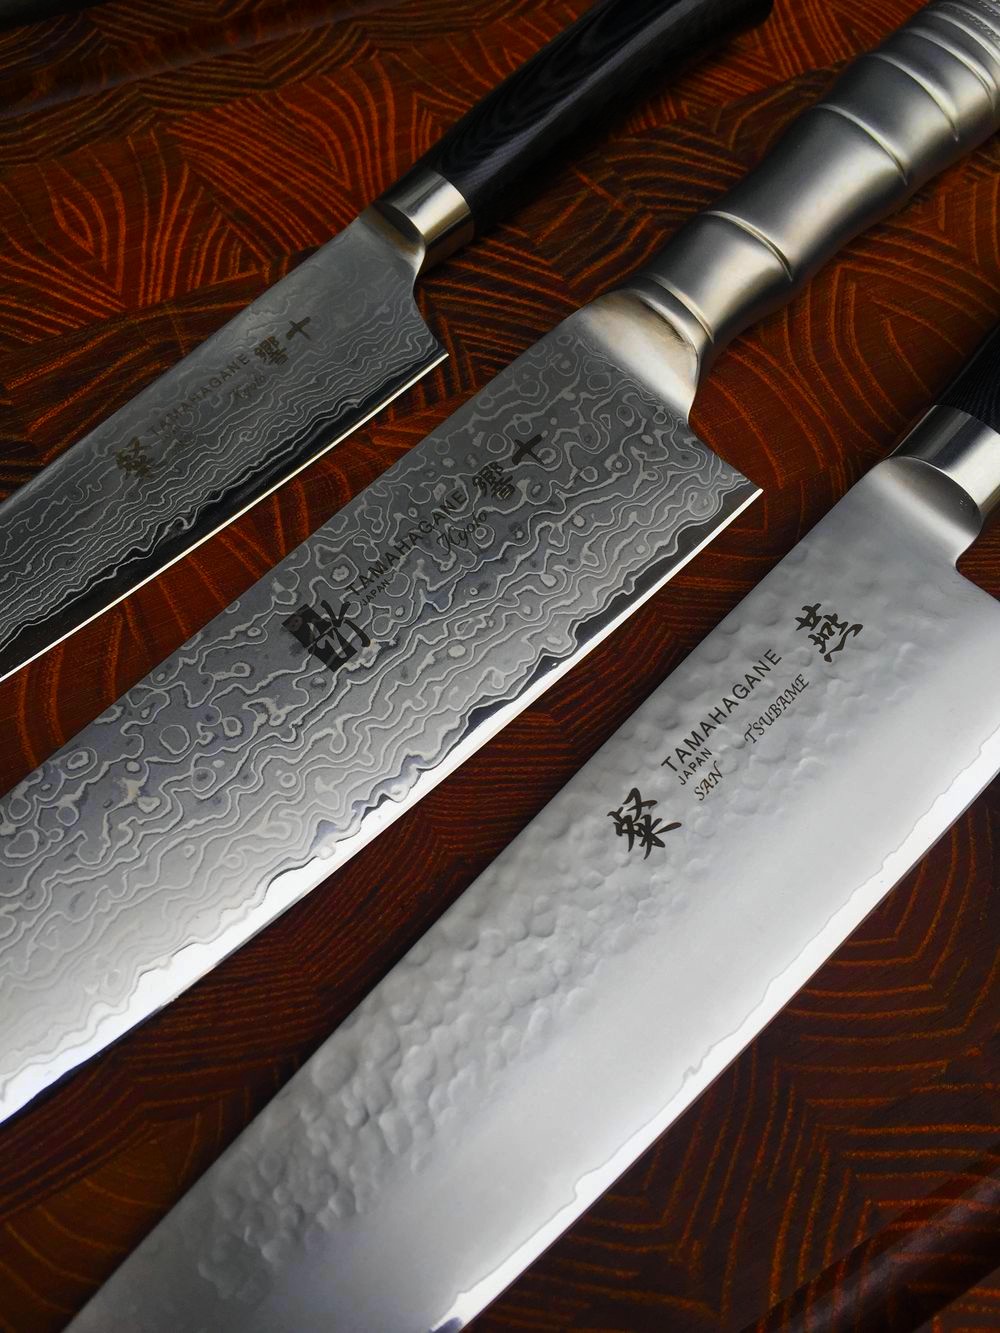 Couteaux japonais Tamahagane